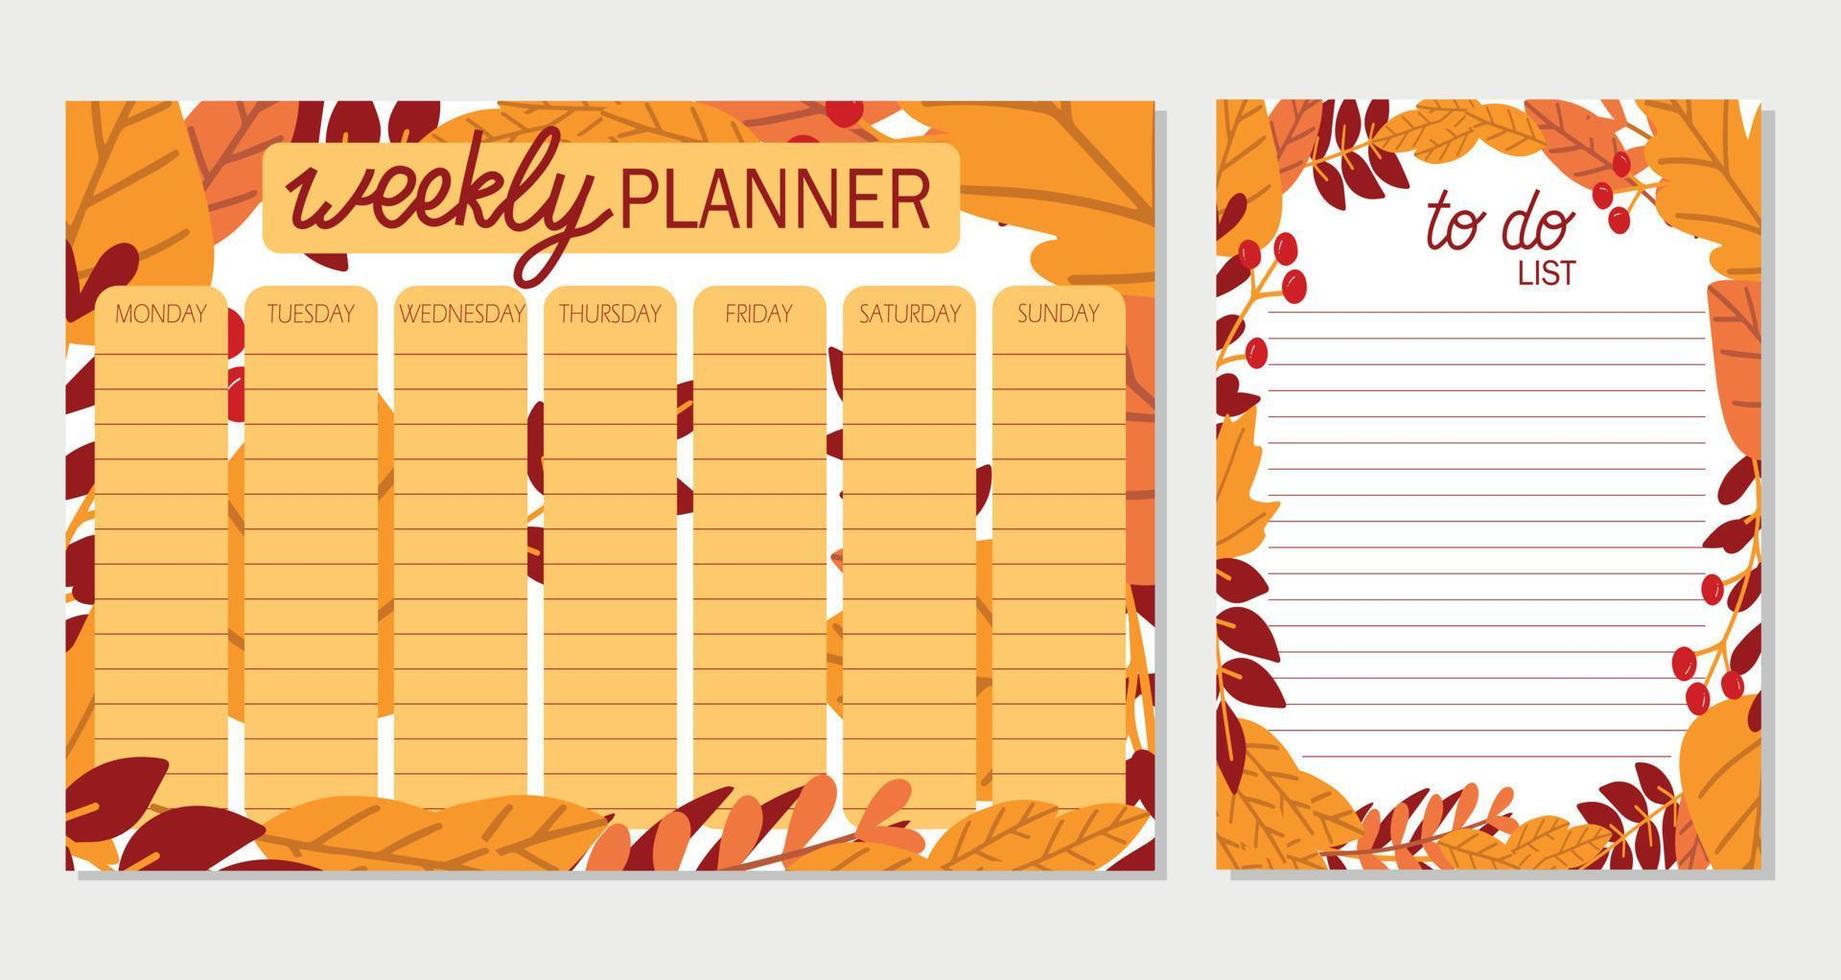 semanal planificador y a hacer lista con otoño alero,plantilla página, garabato mano dibujado vector ilustración. otoño y otoño concepto.